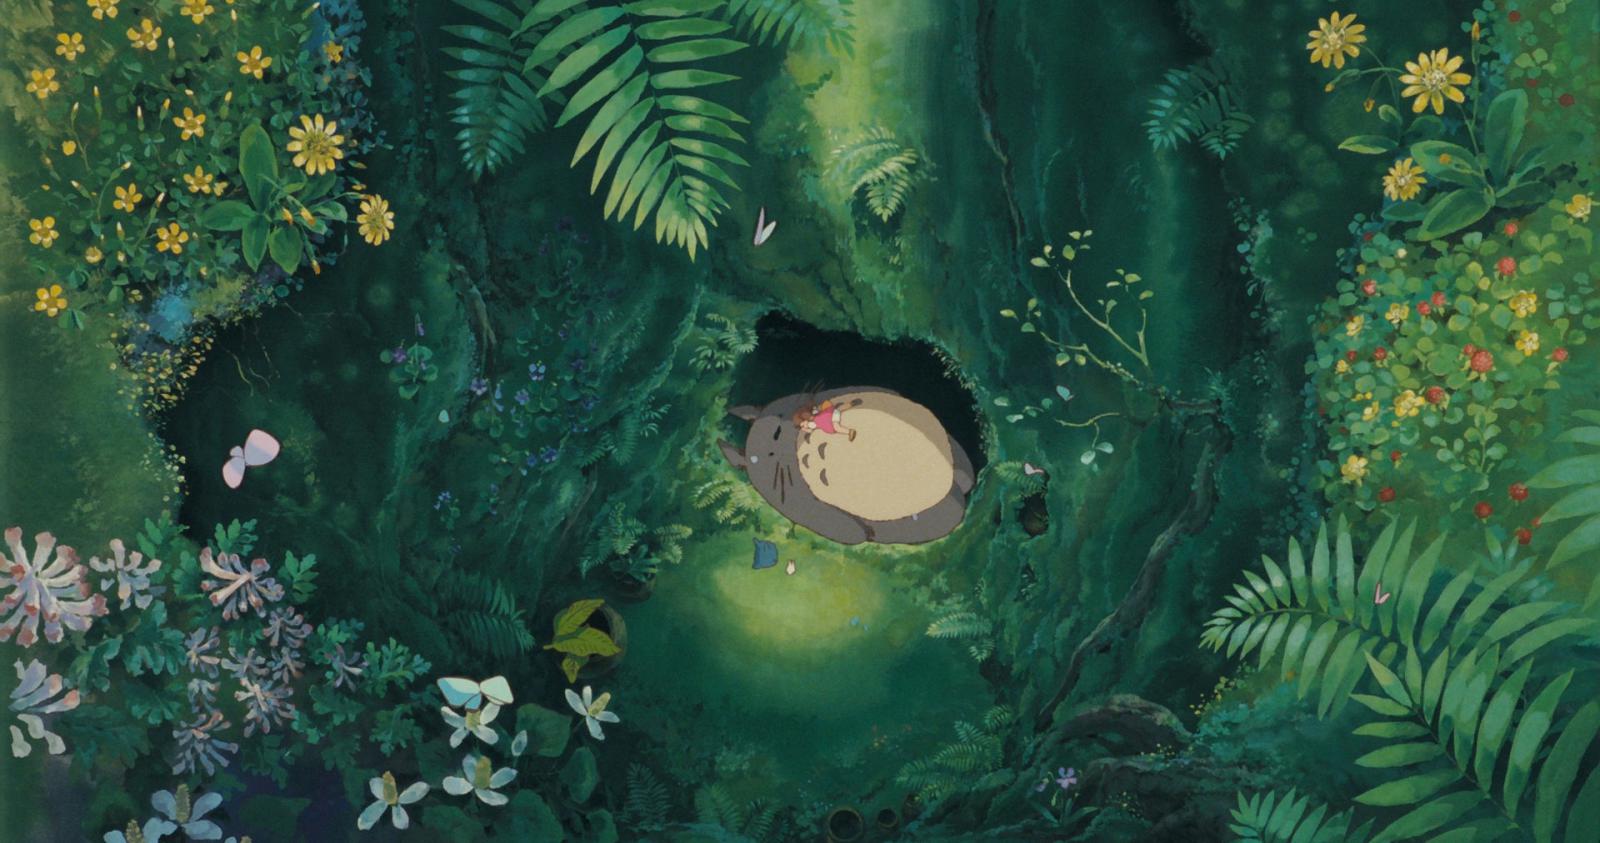 Хаяо Миядзаки (Hayao Miyazaki): первая выставка в России